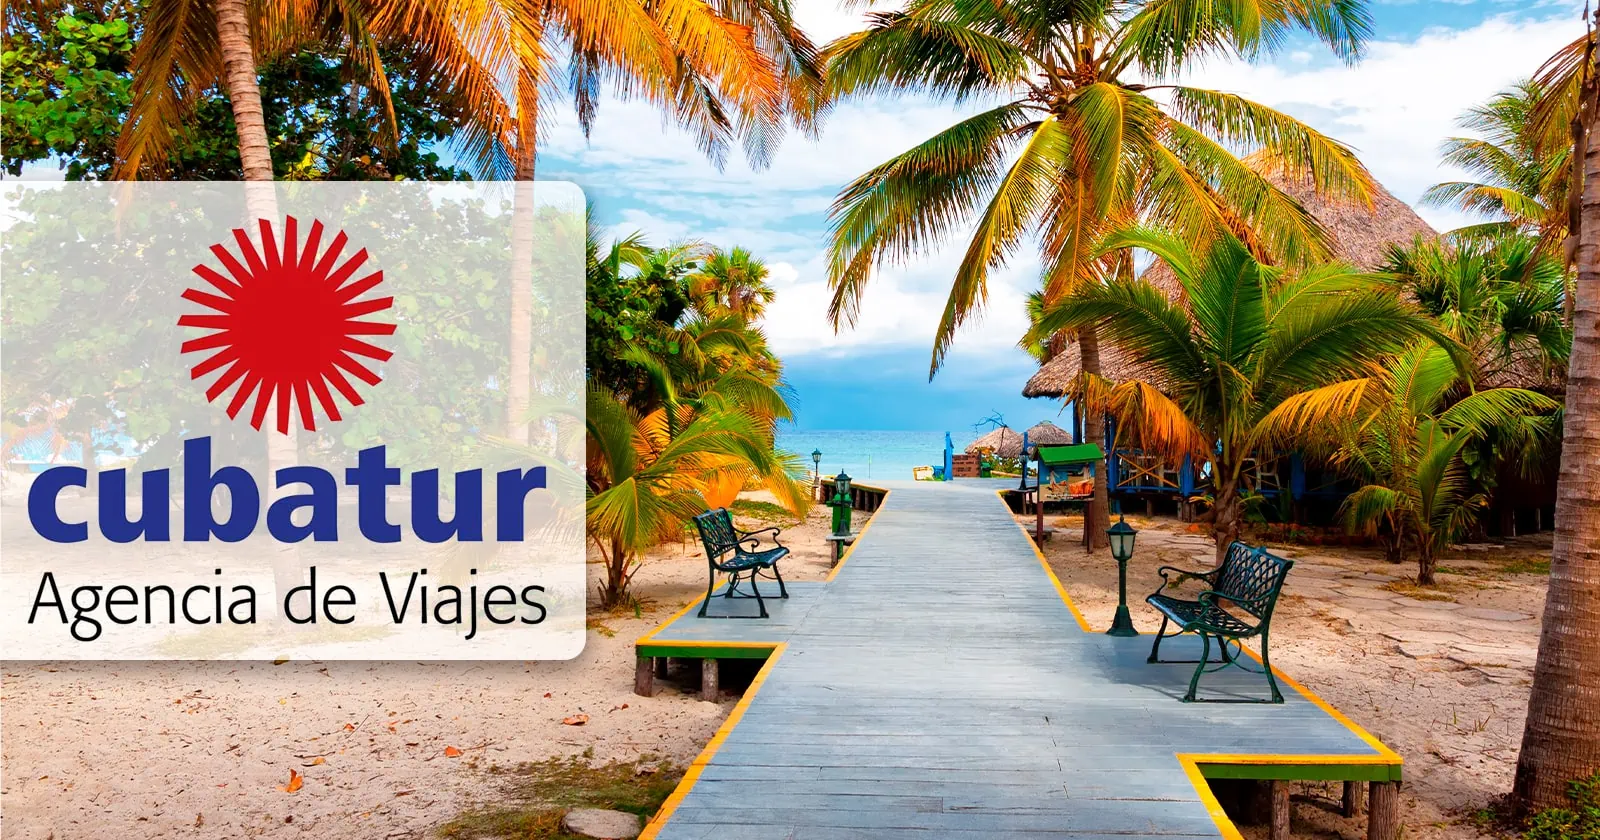 Convoca Agencia de Viajes Cubatur a Concurso por el Nuevo Aniversario